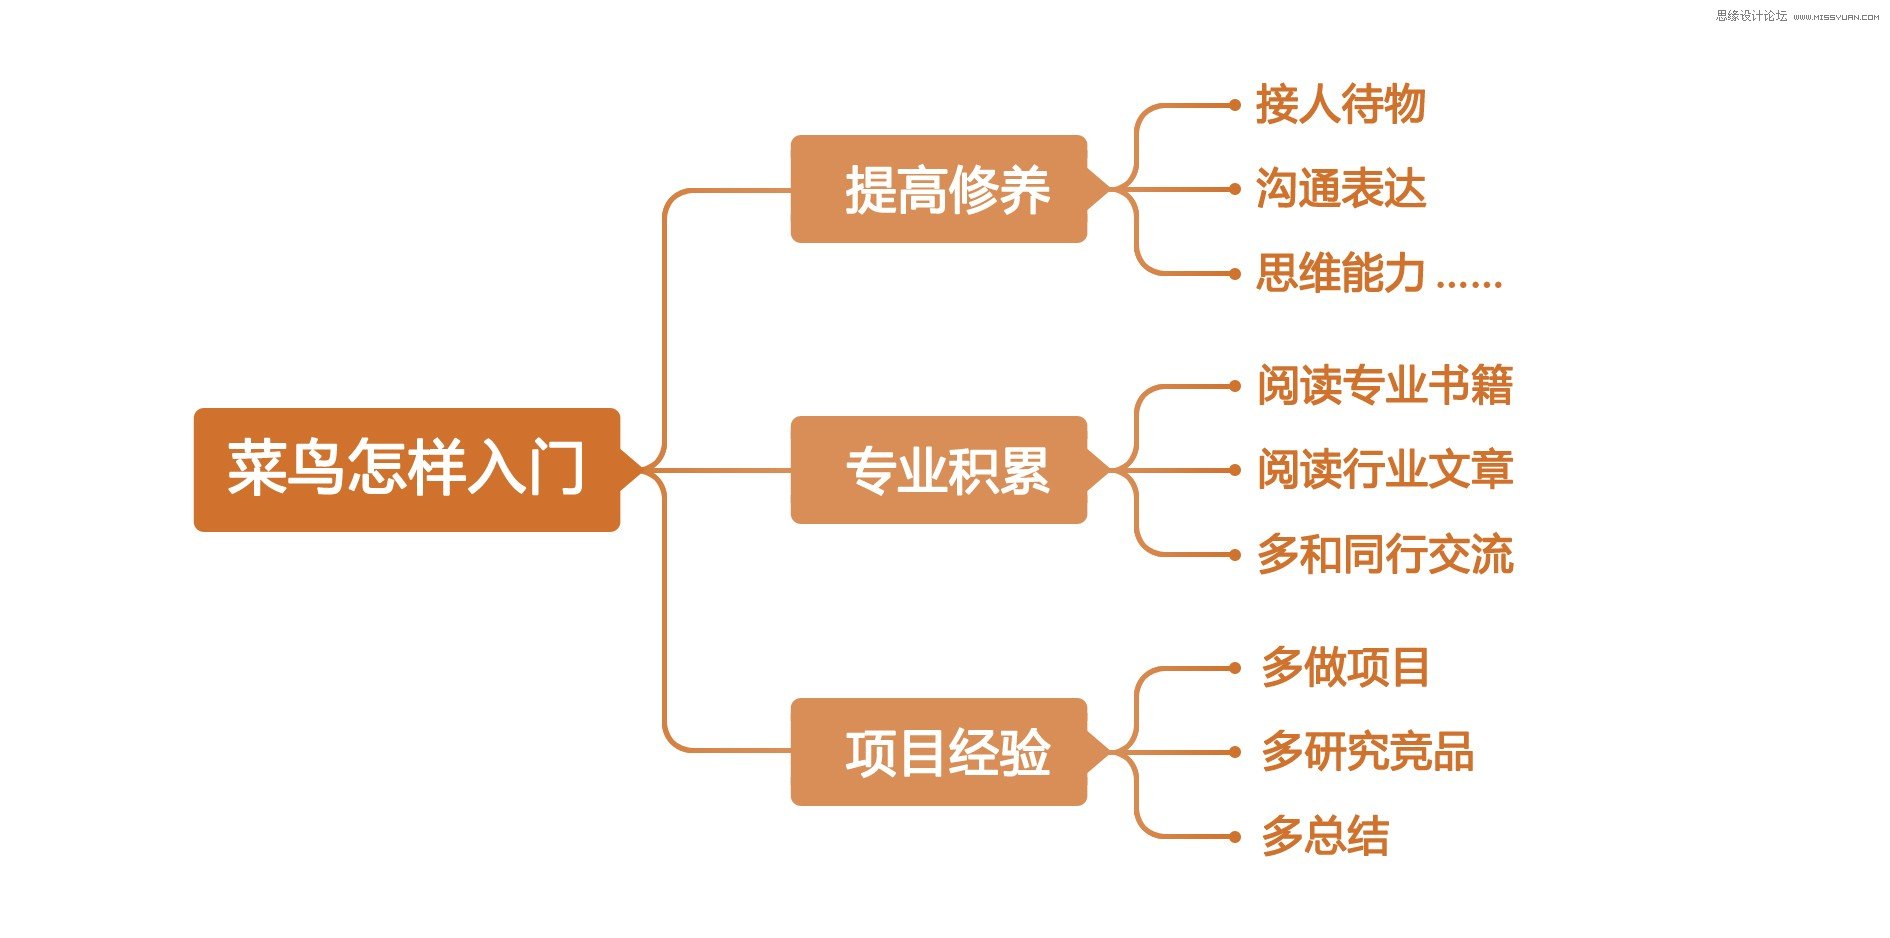 阿里交互设计专家刘津的设计管理之路,PS教程,图老师教程网